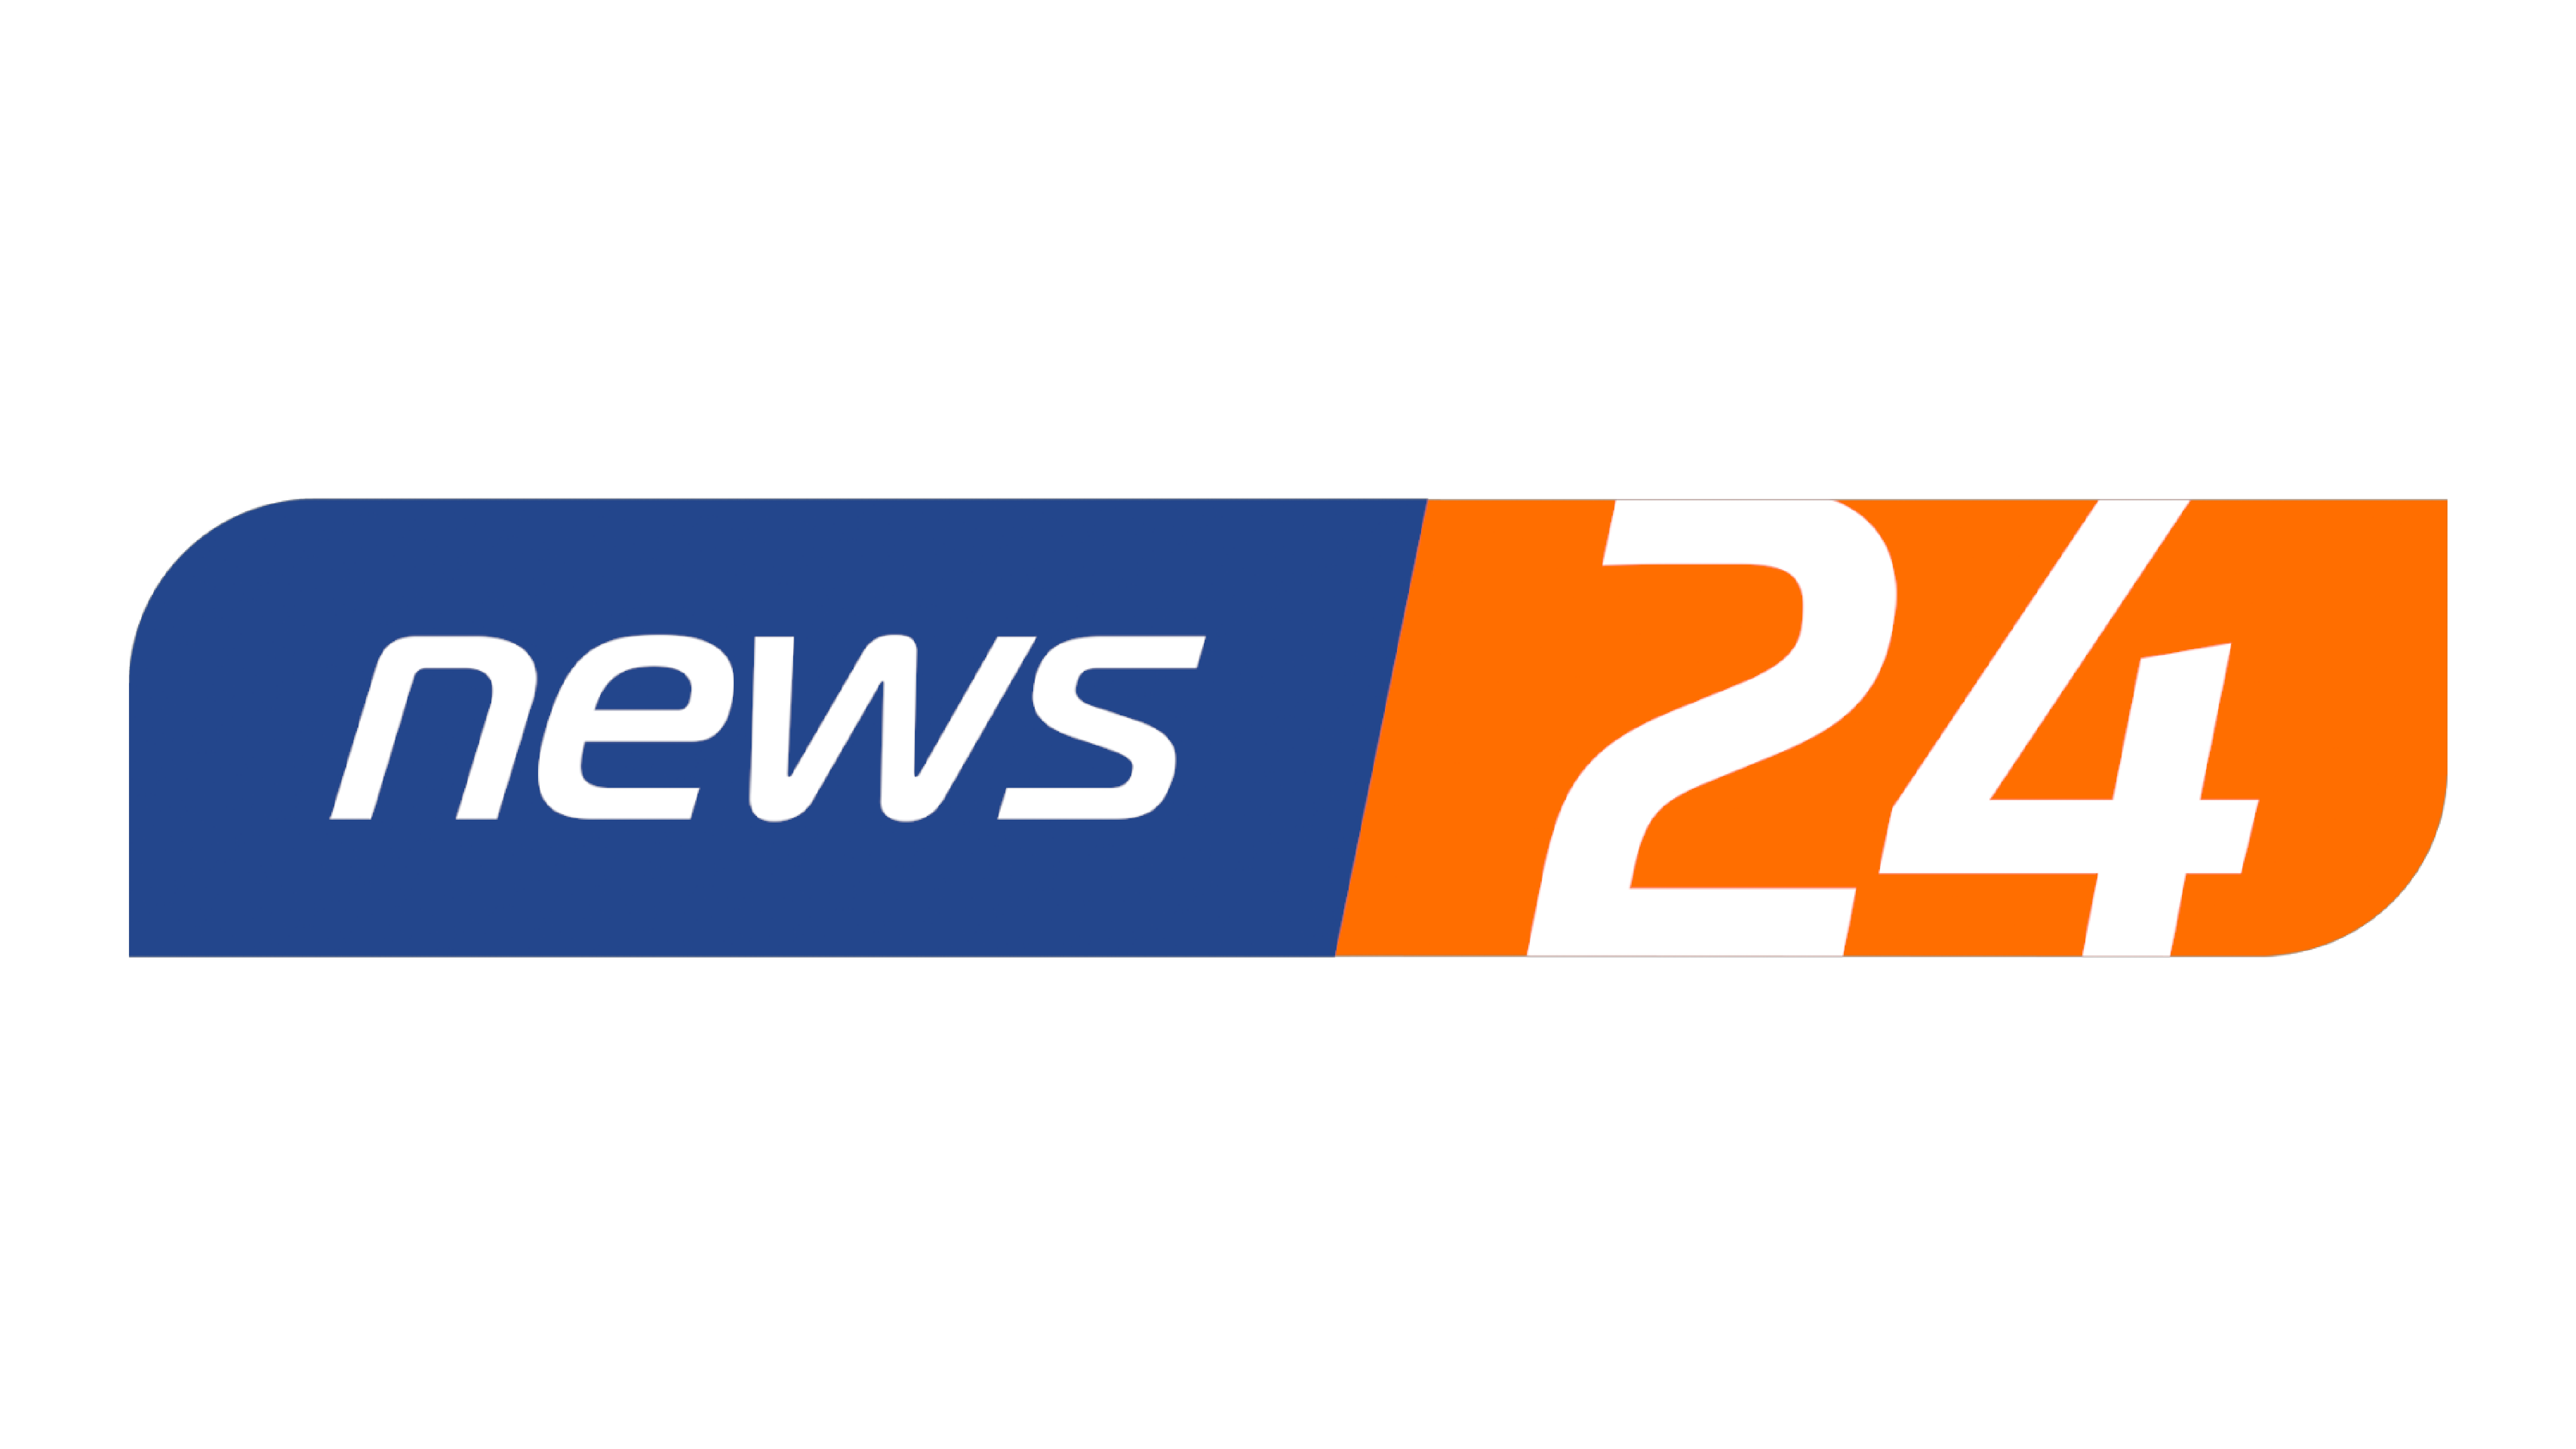 news24 telewizja